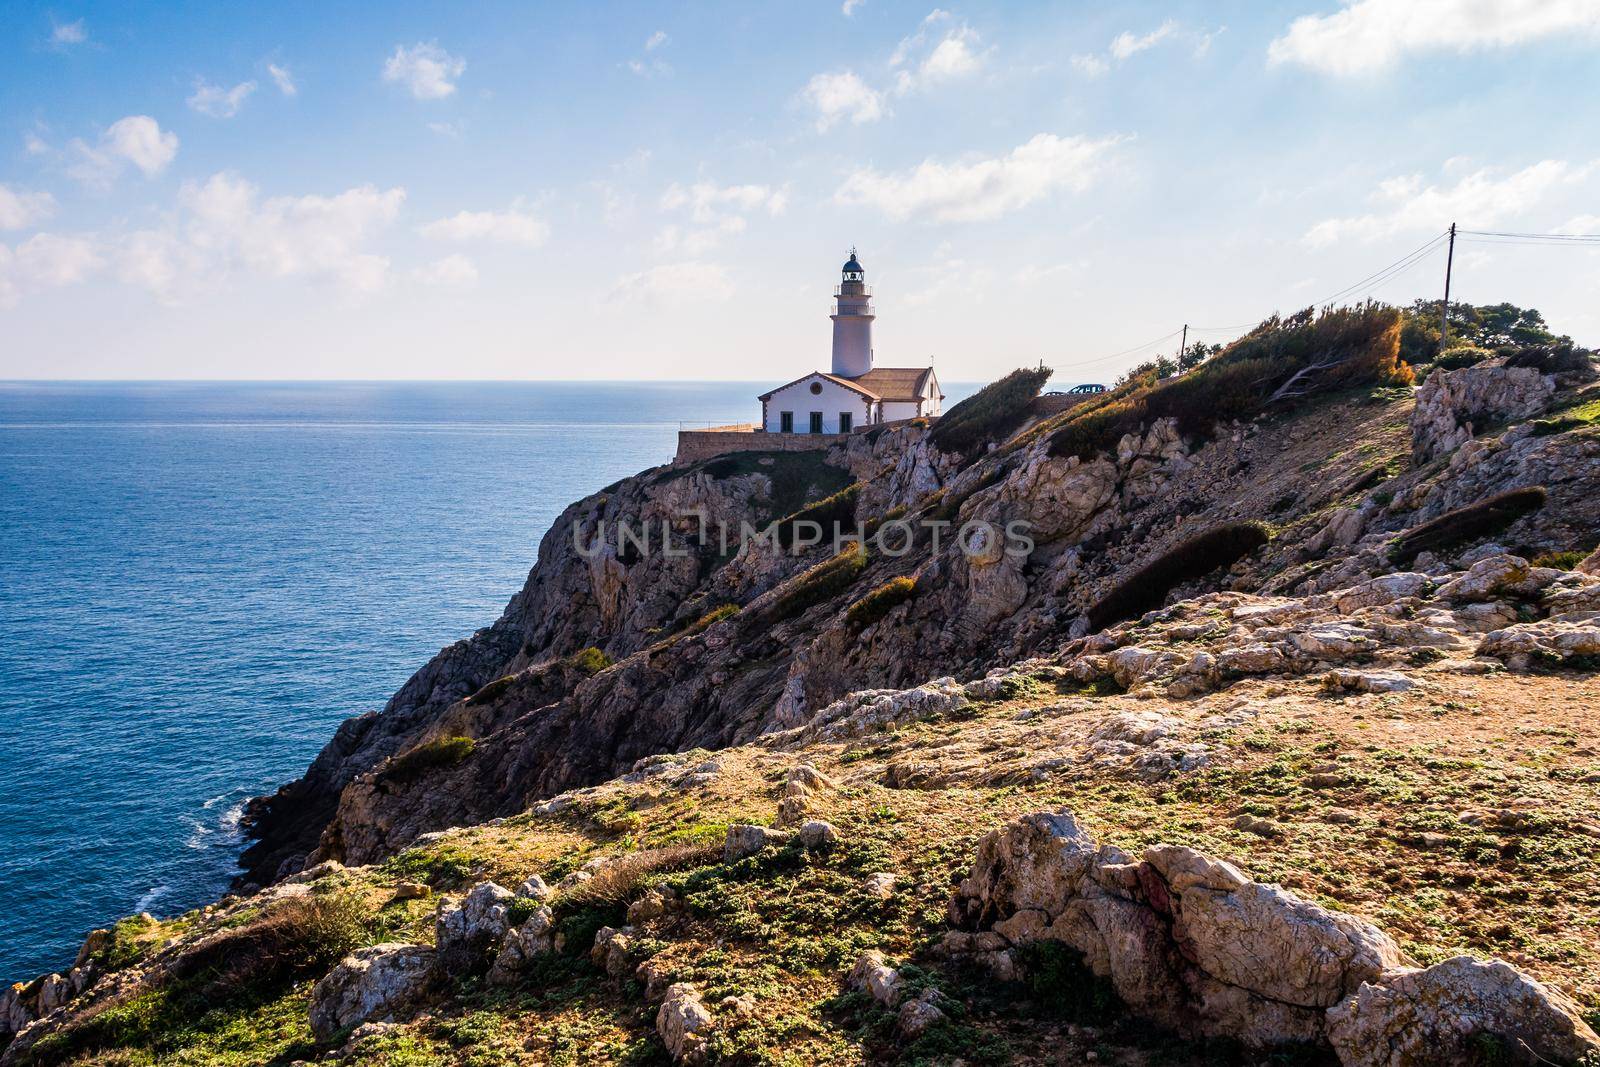 Lighthouse close to Cala Rajada, Majorca by bildgigant